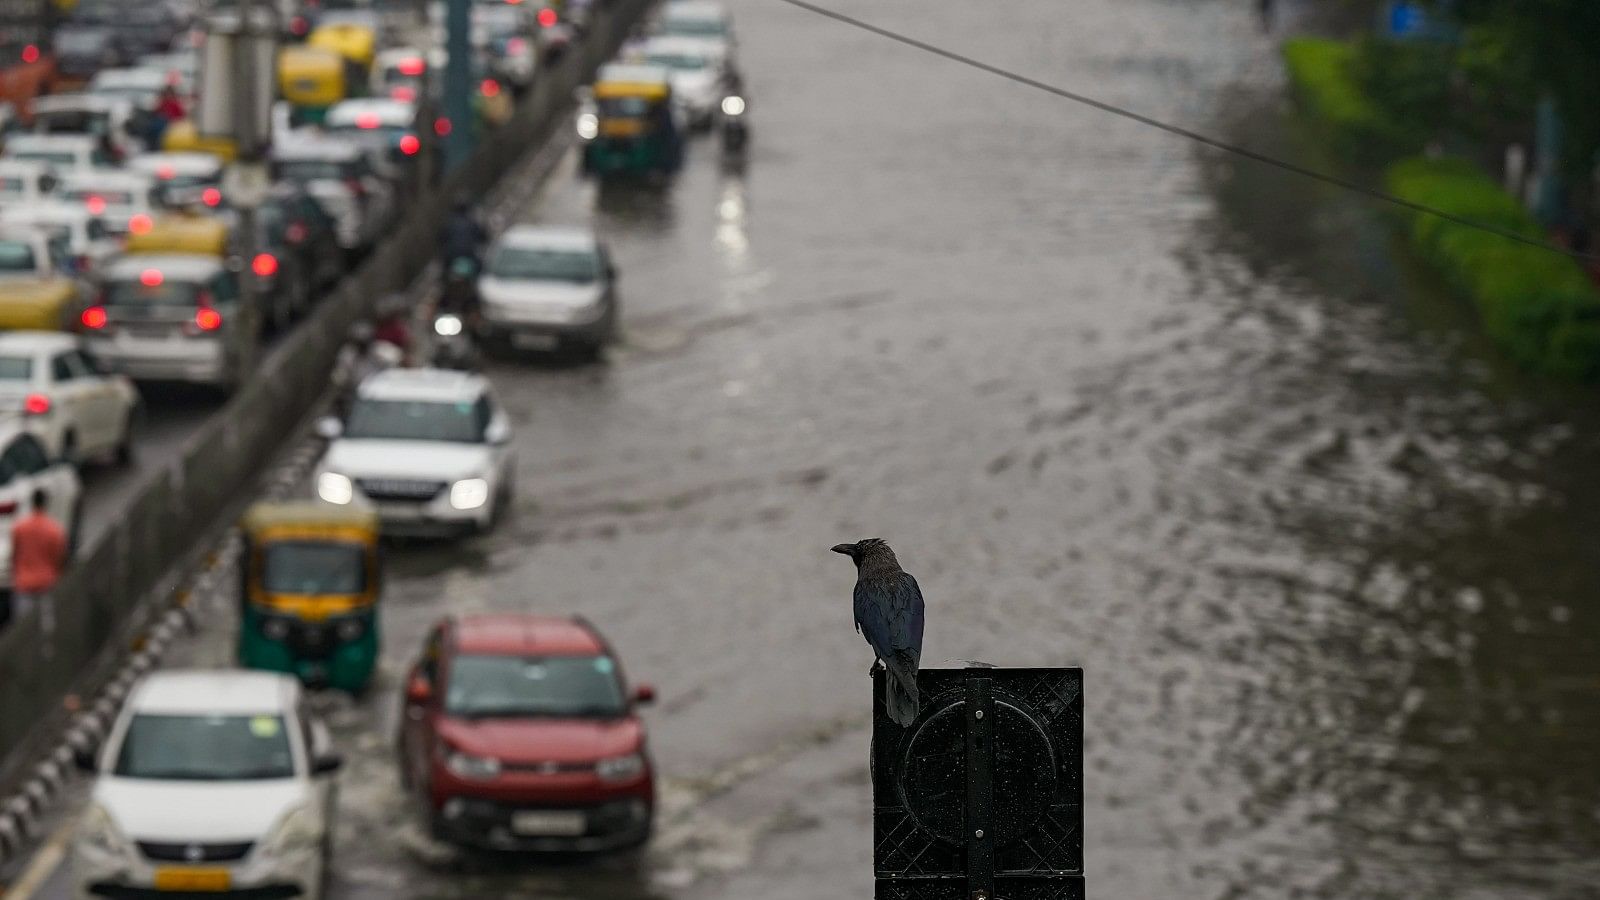 <div class="paragraphs"><p>बारिश से बेहाल हुई दिल्ली, कहीं लंबा जाम तो कहीं जलभराव</p></div>